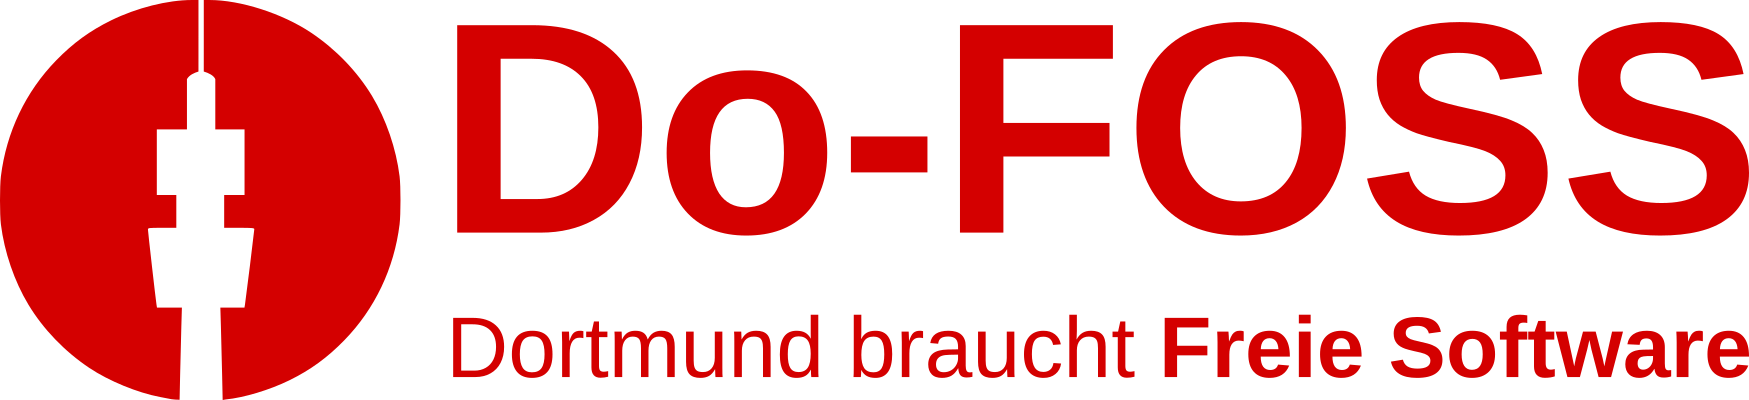 OpenFlorian_Dortmund_braucht_Freie_Software-400